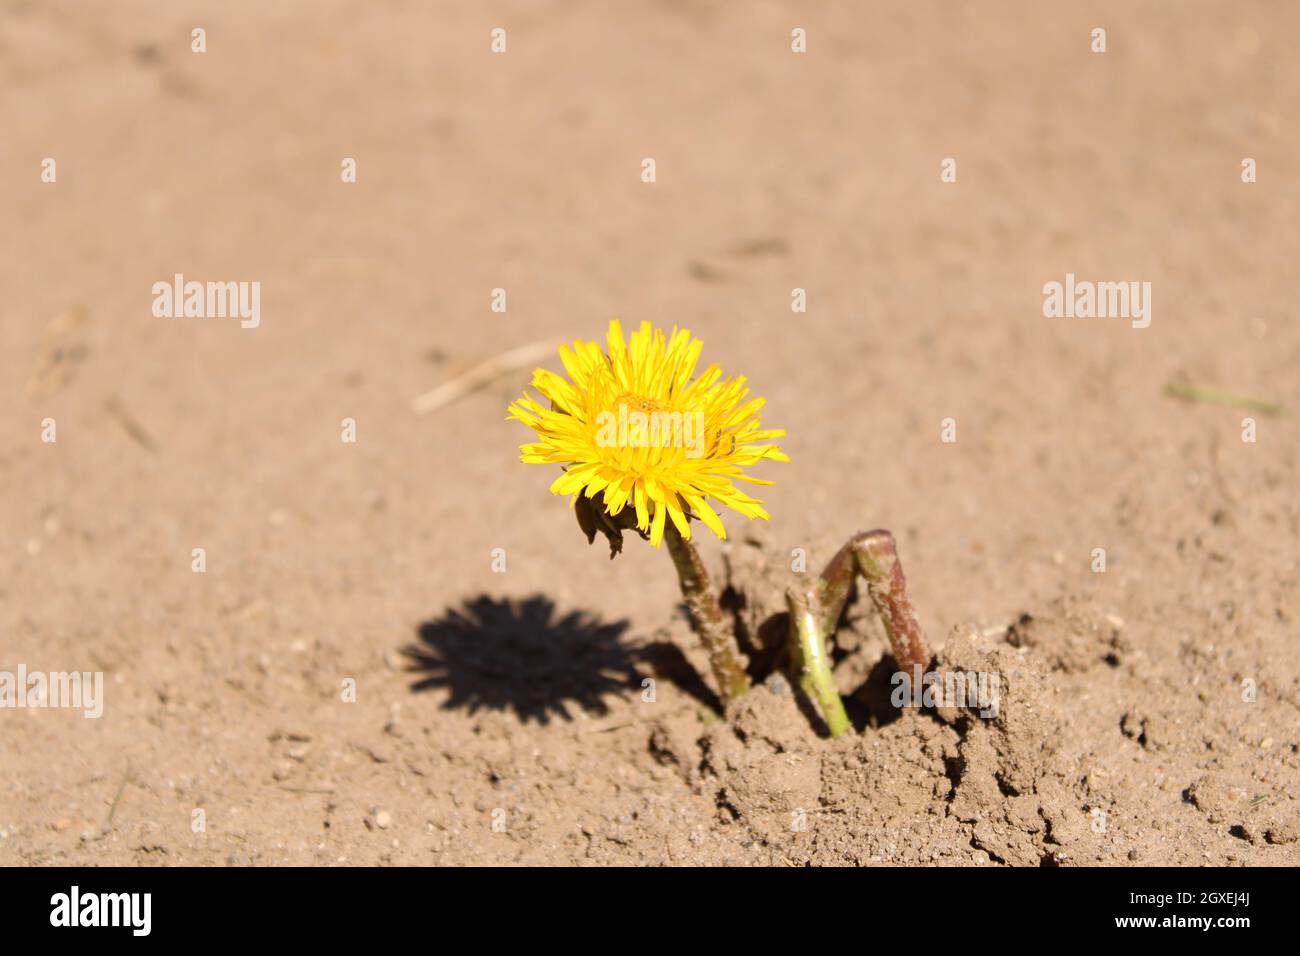 Yellow dandelion breaking through the soil Stock Photo